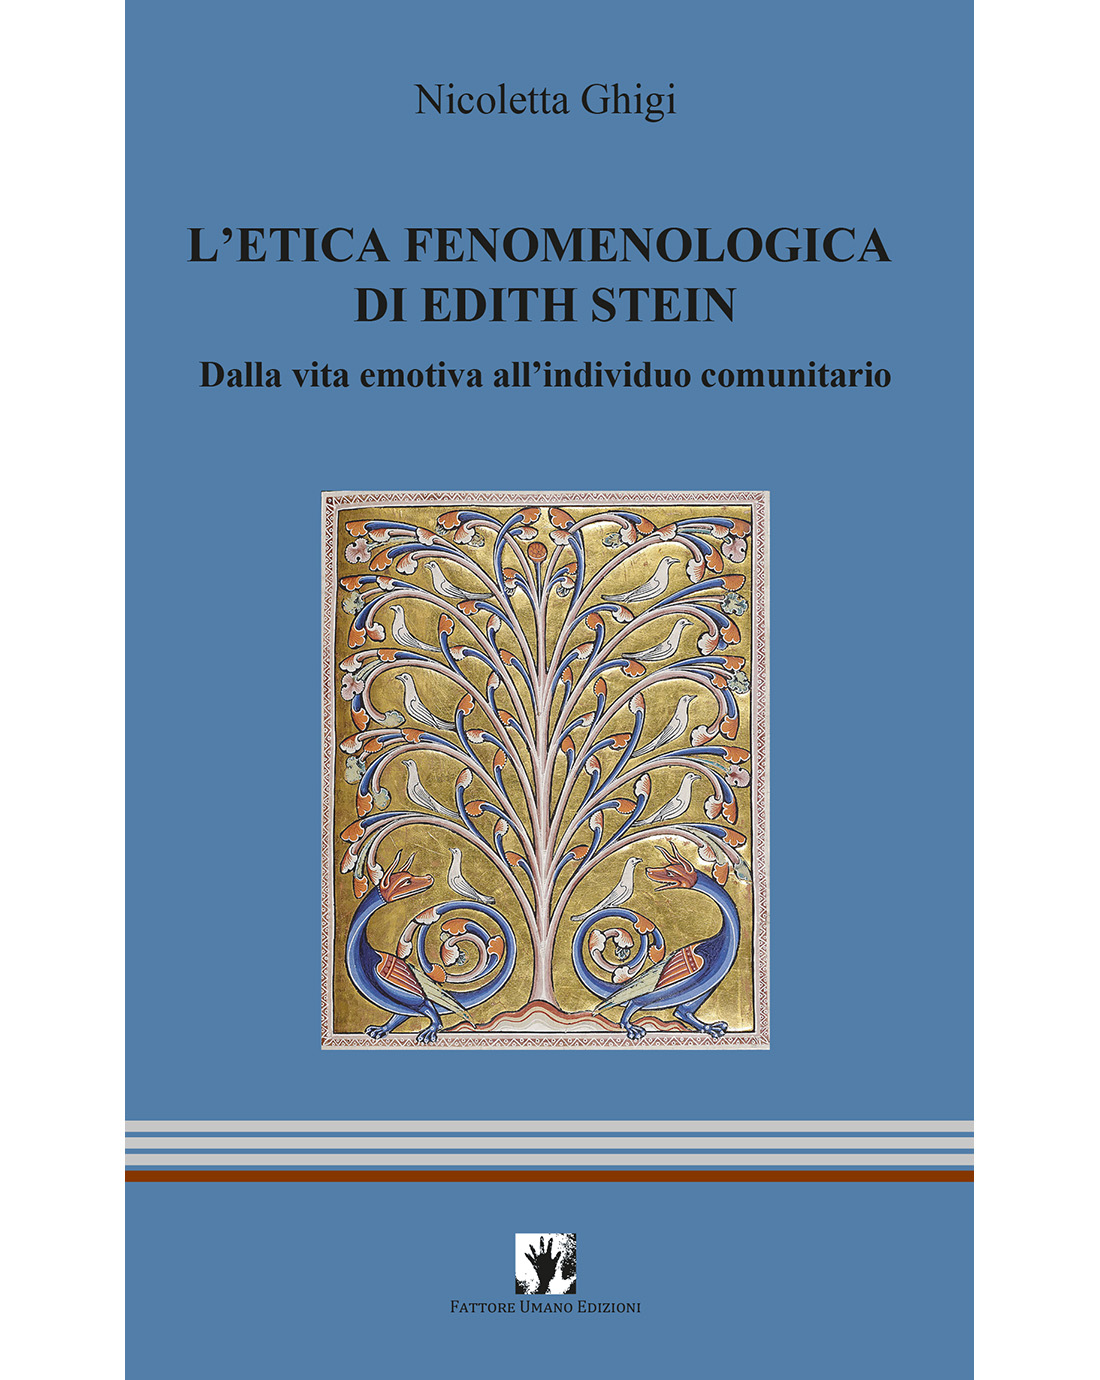 L’etica fenomenologica di Edith Stein